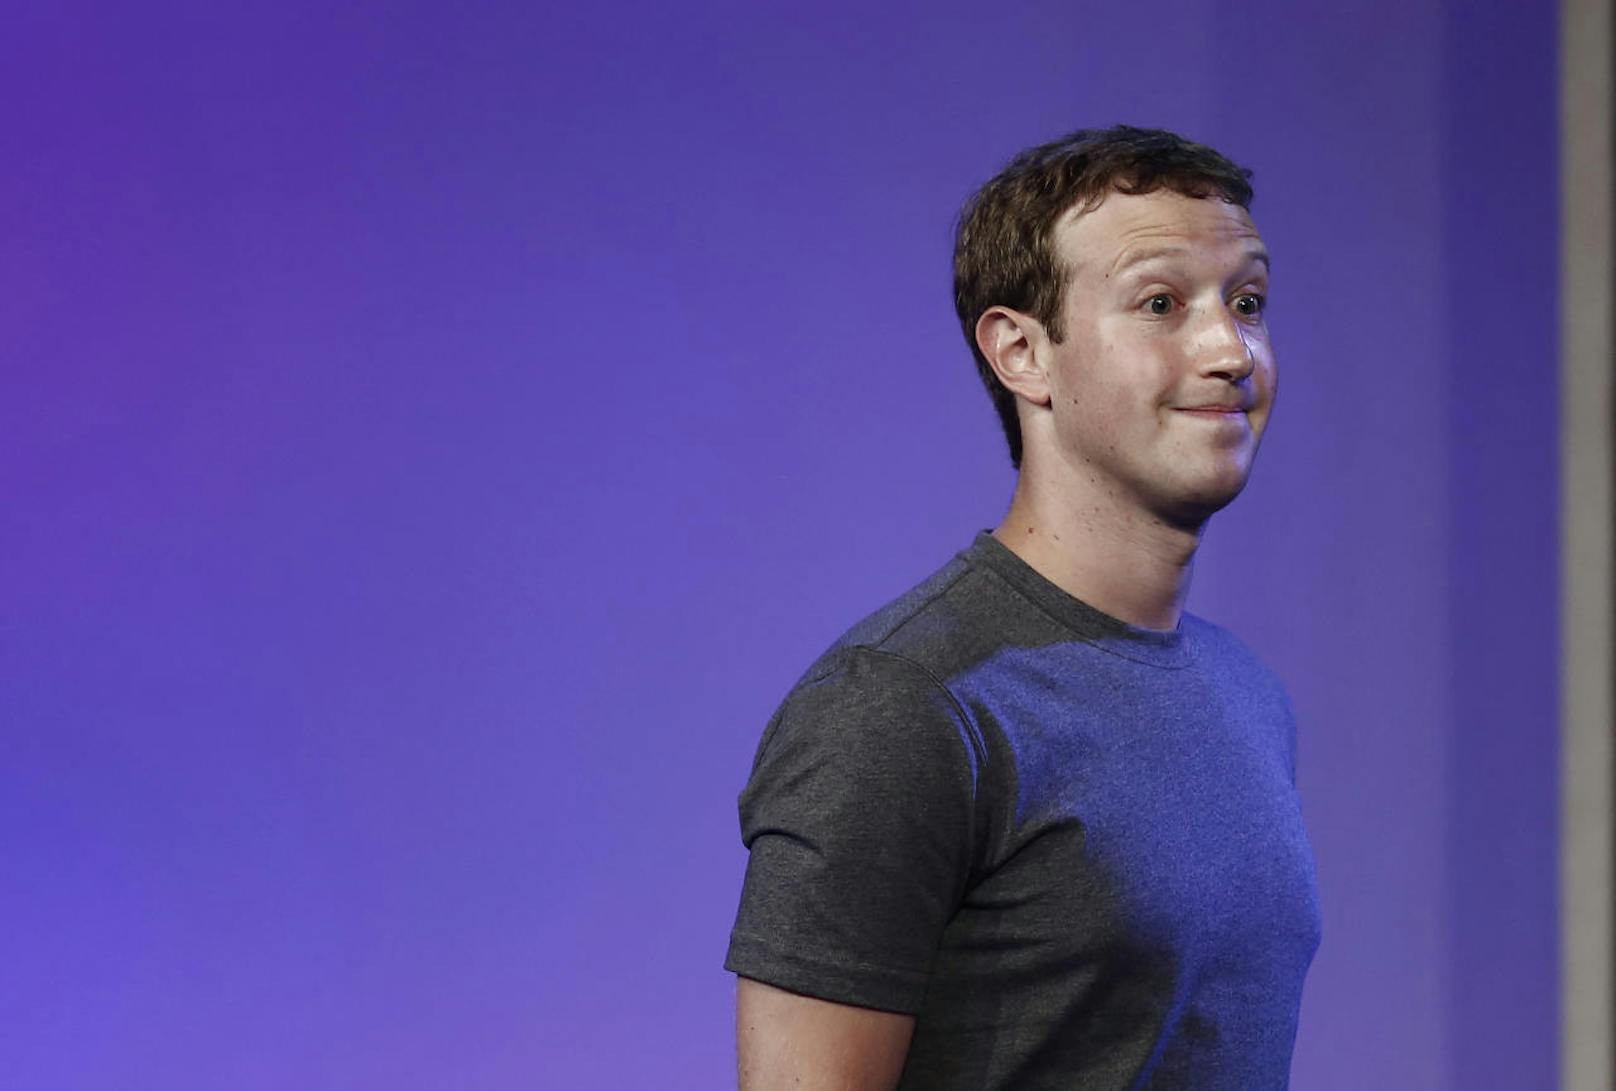 Auch Mark Zuckerberg, Facebook-Gründer und Chef, musste Federn lassen: Der 33-Jährige hat 3,62 Milliarden US-Dollar verloren. Neu besitzt er 74,7 Milliarden US-Dollar.